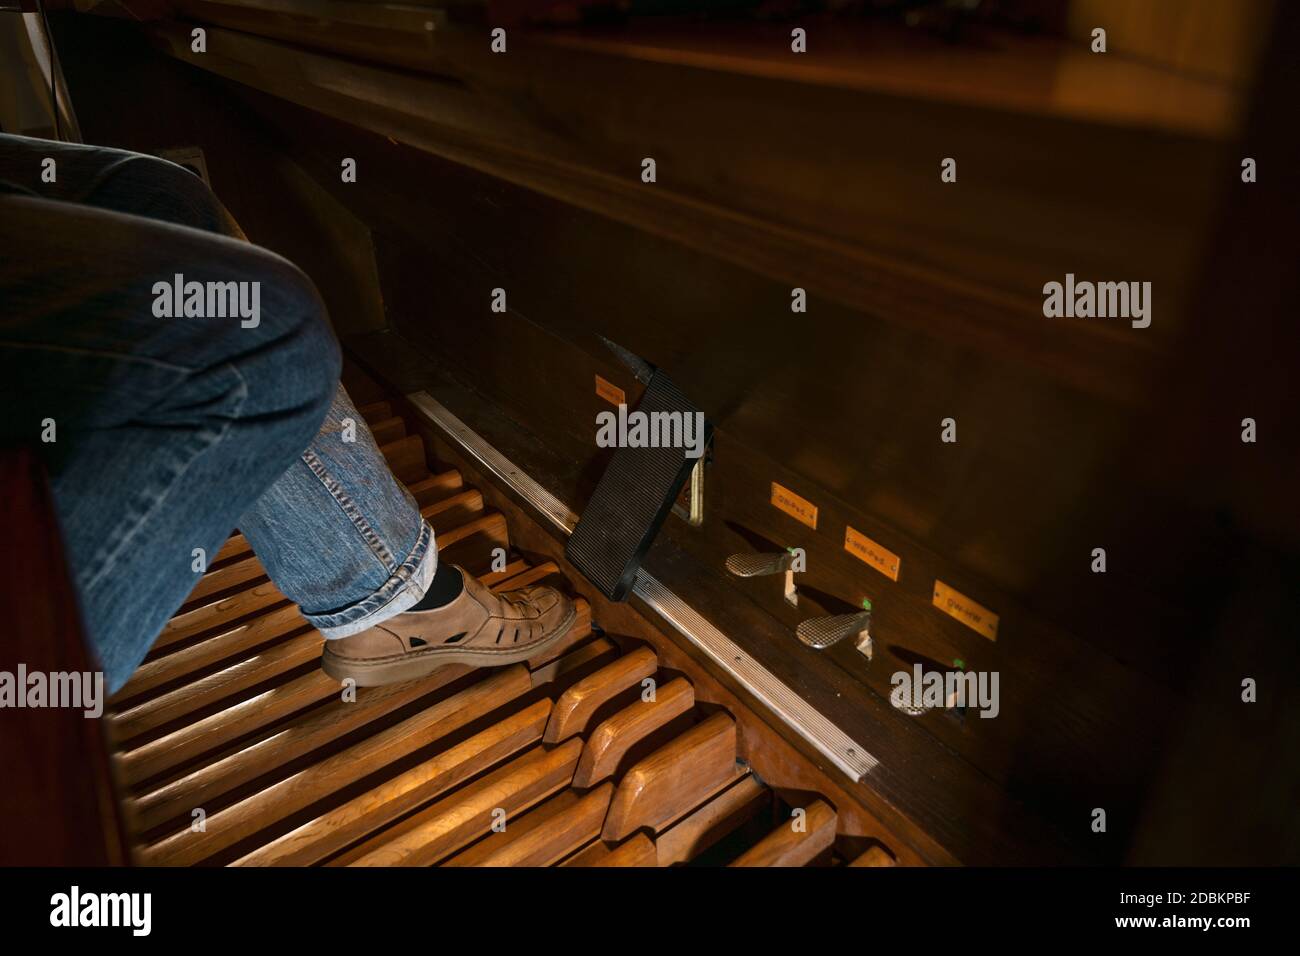 Fuß eines Organisten spielt auf dem Pedal einer Pfeifenorgel in einer Kirche, Kopierraum, ausgewählter Fokus, enge Schärfentiefe Stockfoto